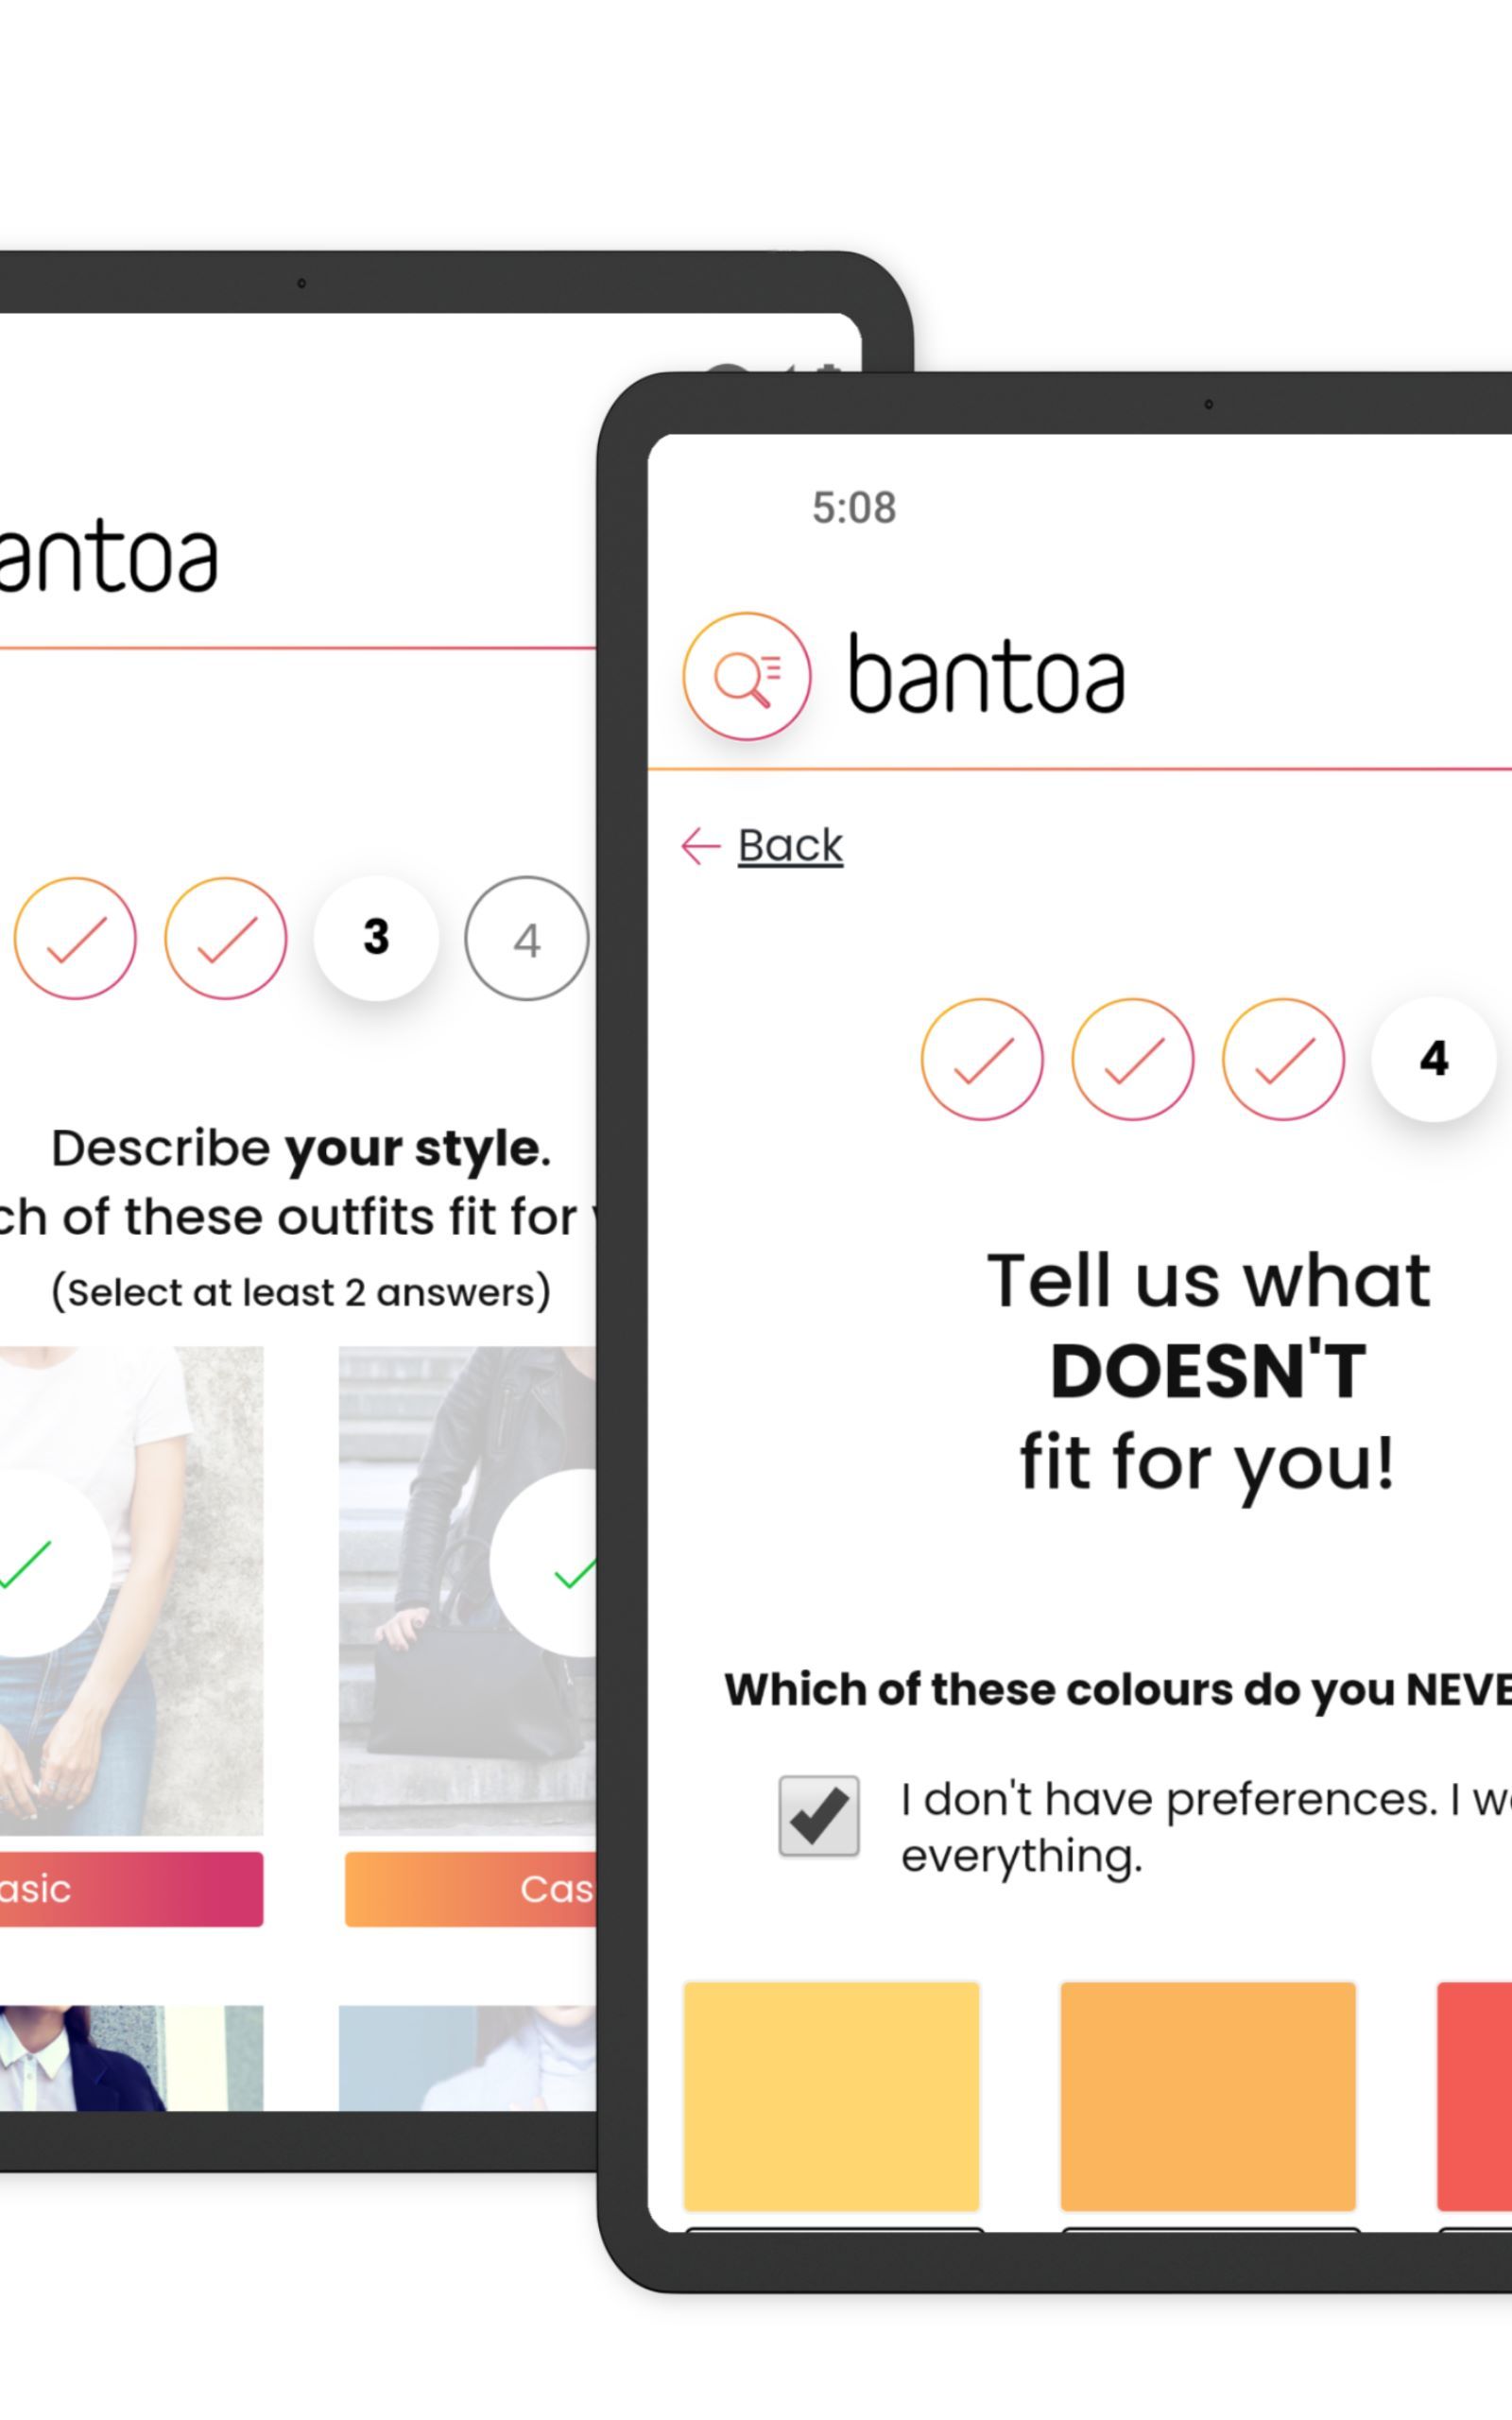 Bantoa: Outfits, Looks & Fashion trends